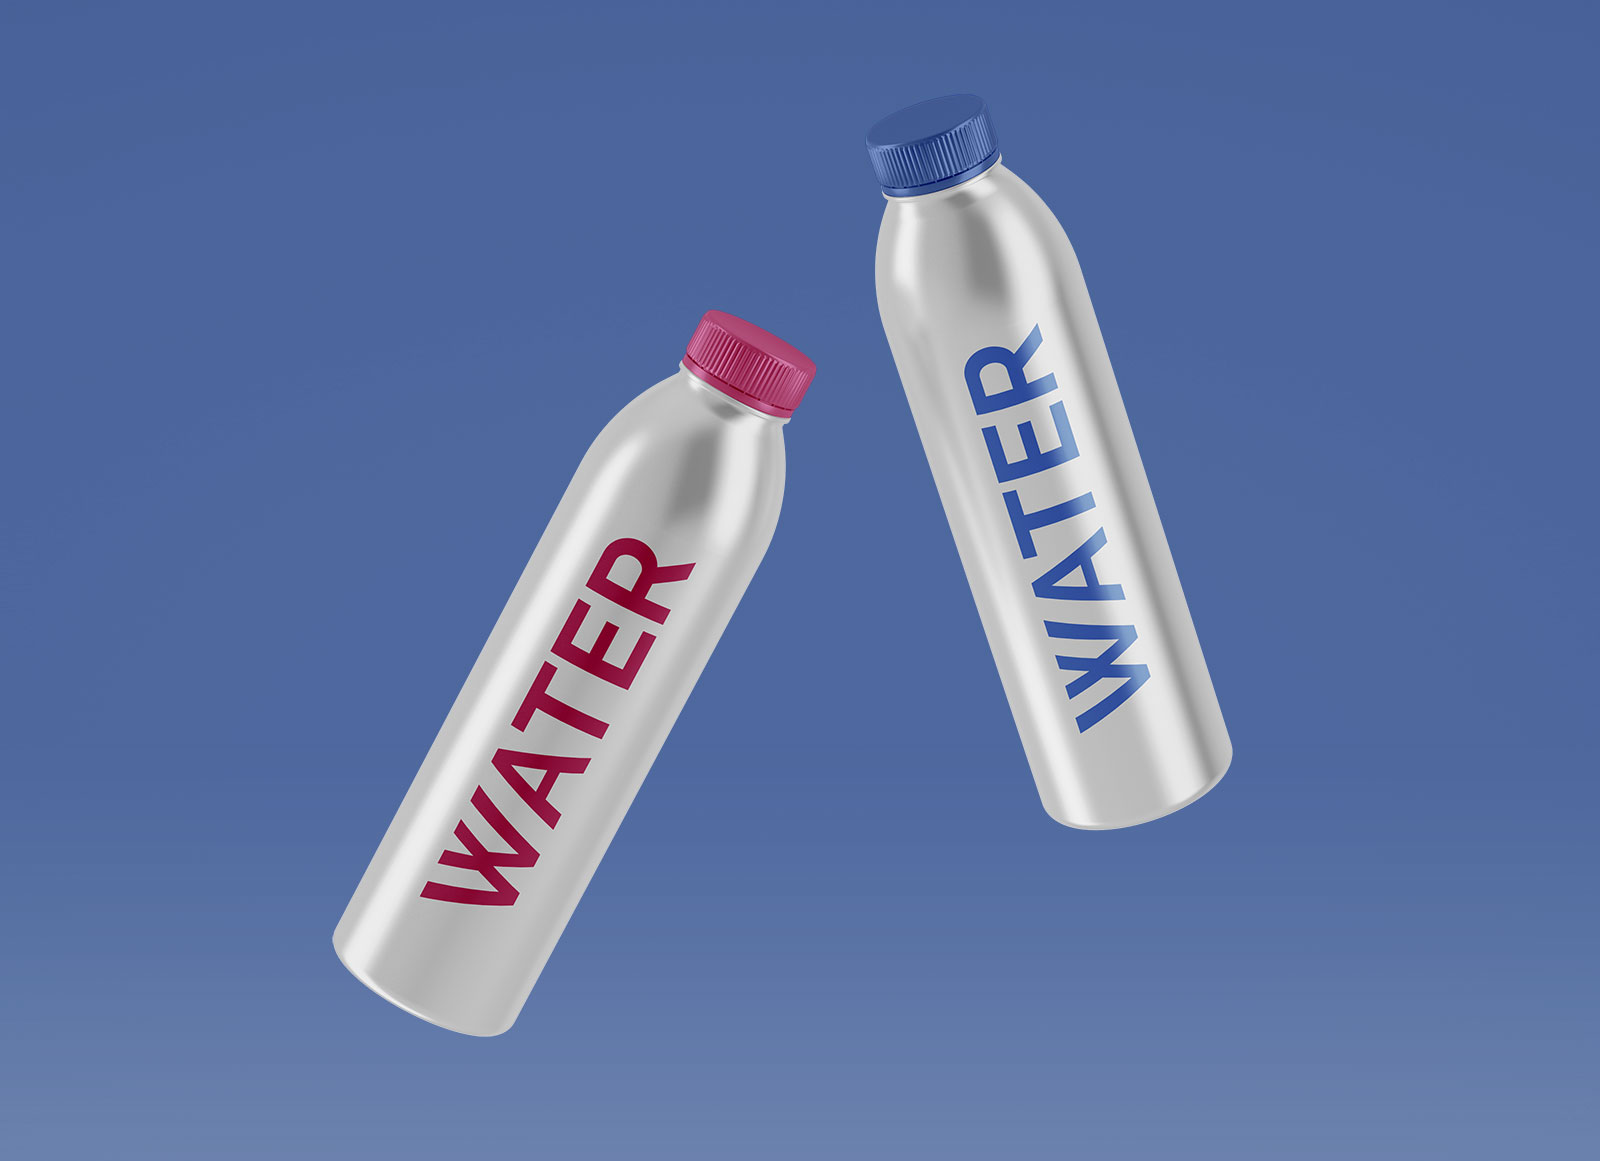 Free-Metal-Water-Bottle-Mockup-PSD-Set-2